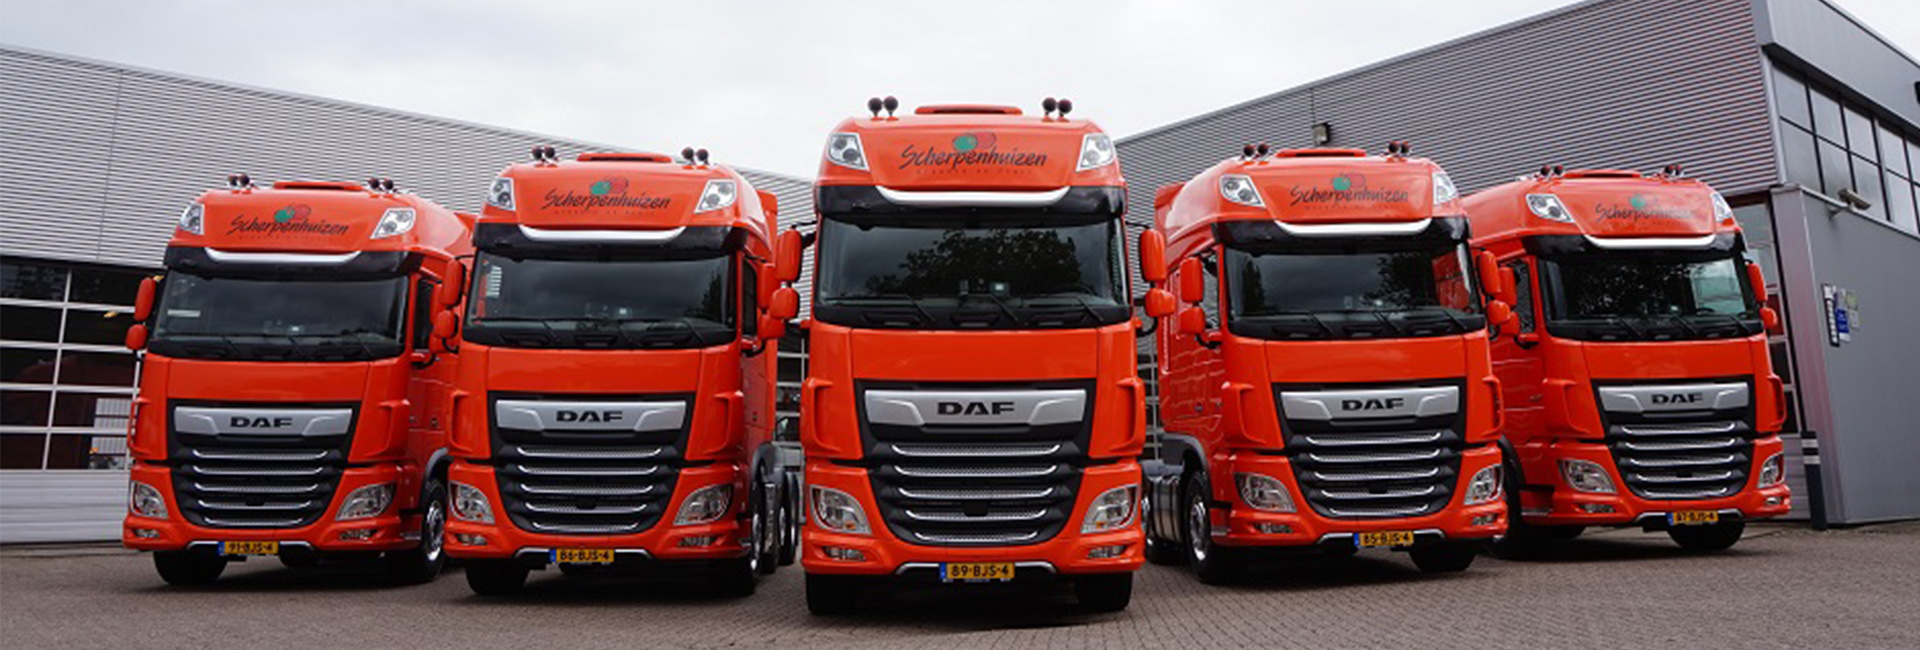 5 DAF XF Trucks voor Scherpenhuizen